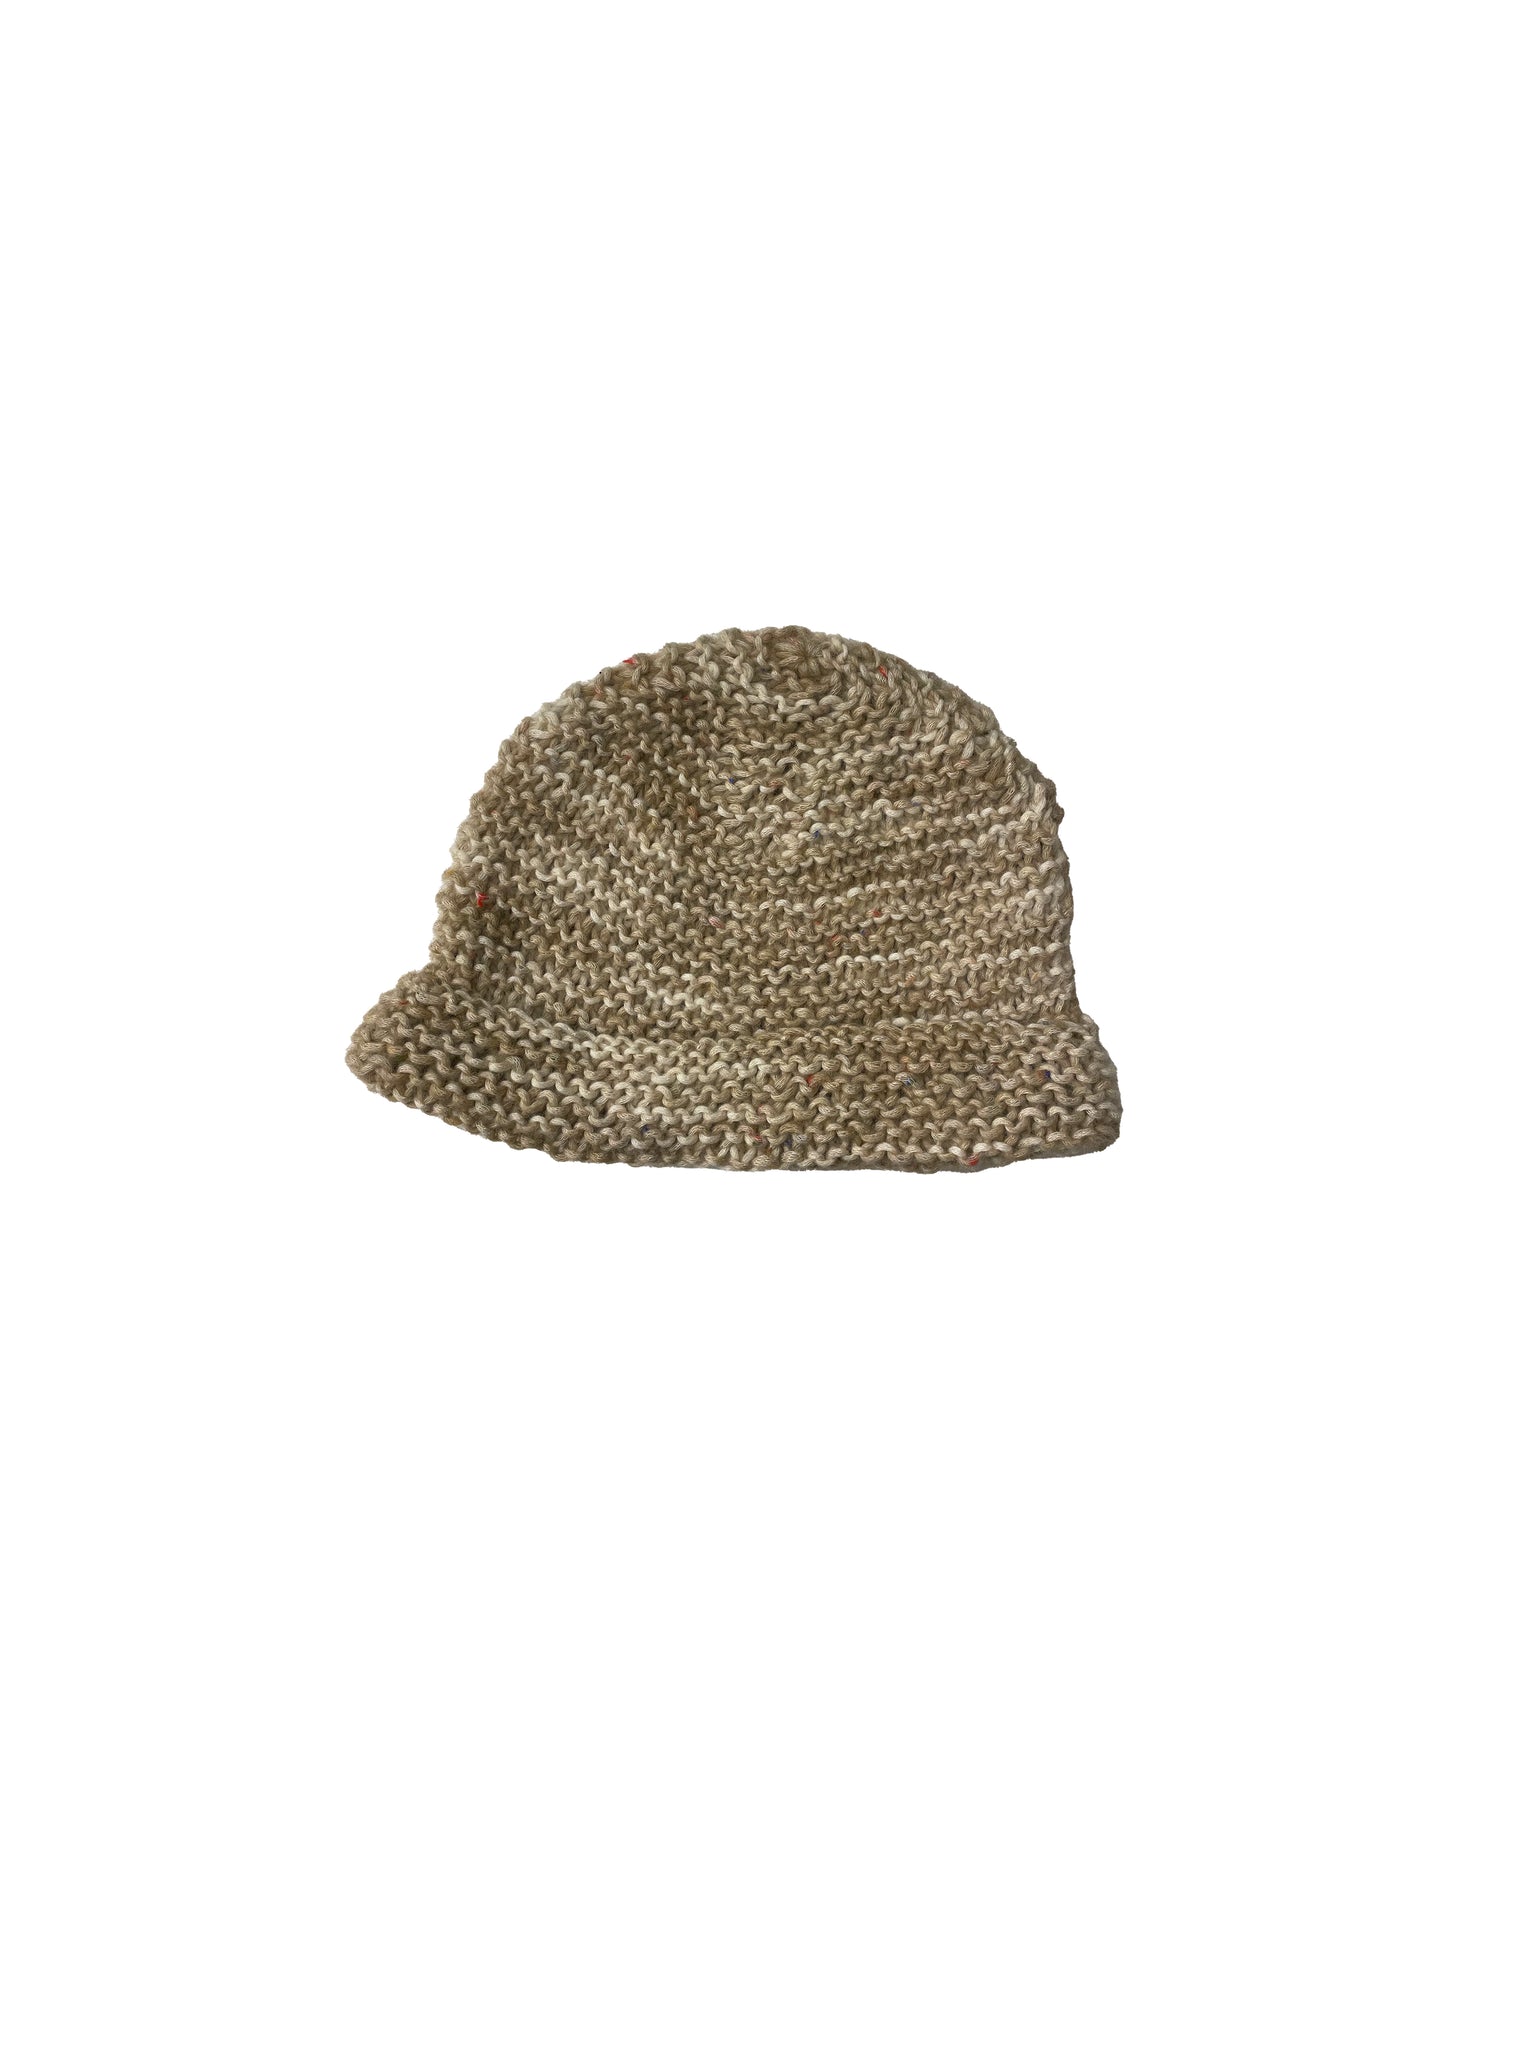 Oceania hat